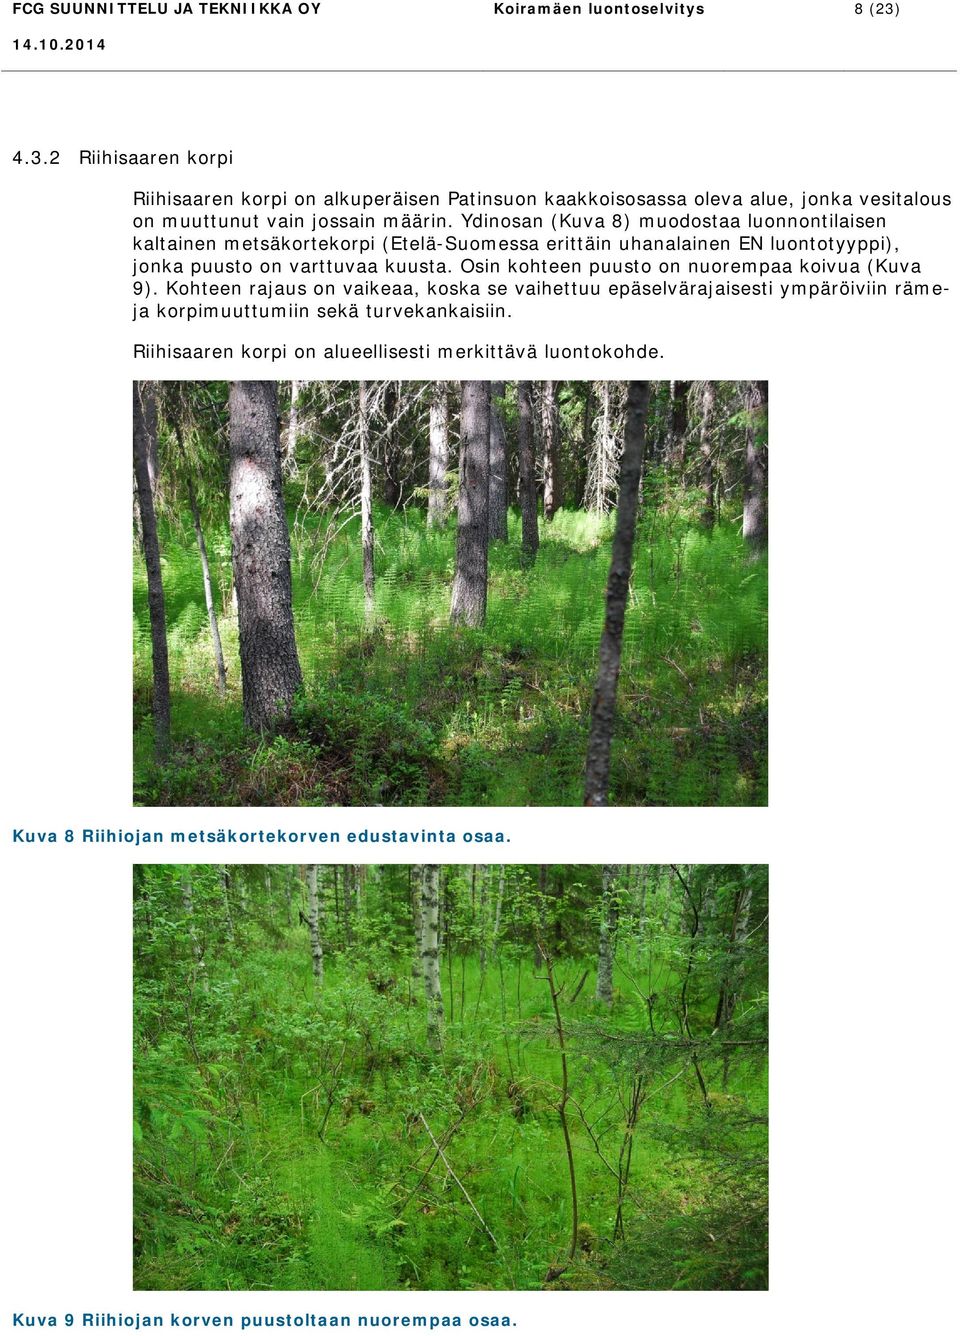 Ydinosan (Kuva 8) muodostaa luonnontilaisen kaltainen metsäkortekorpi (Etelä-Suomessa erittäin uhanalainen EN luontotyyppi), jonka puusto on varttuvaa kuusta.